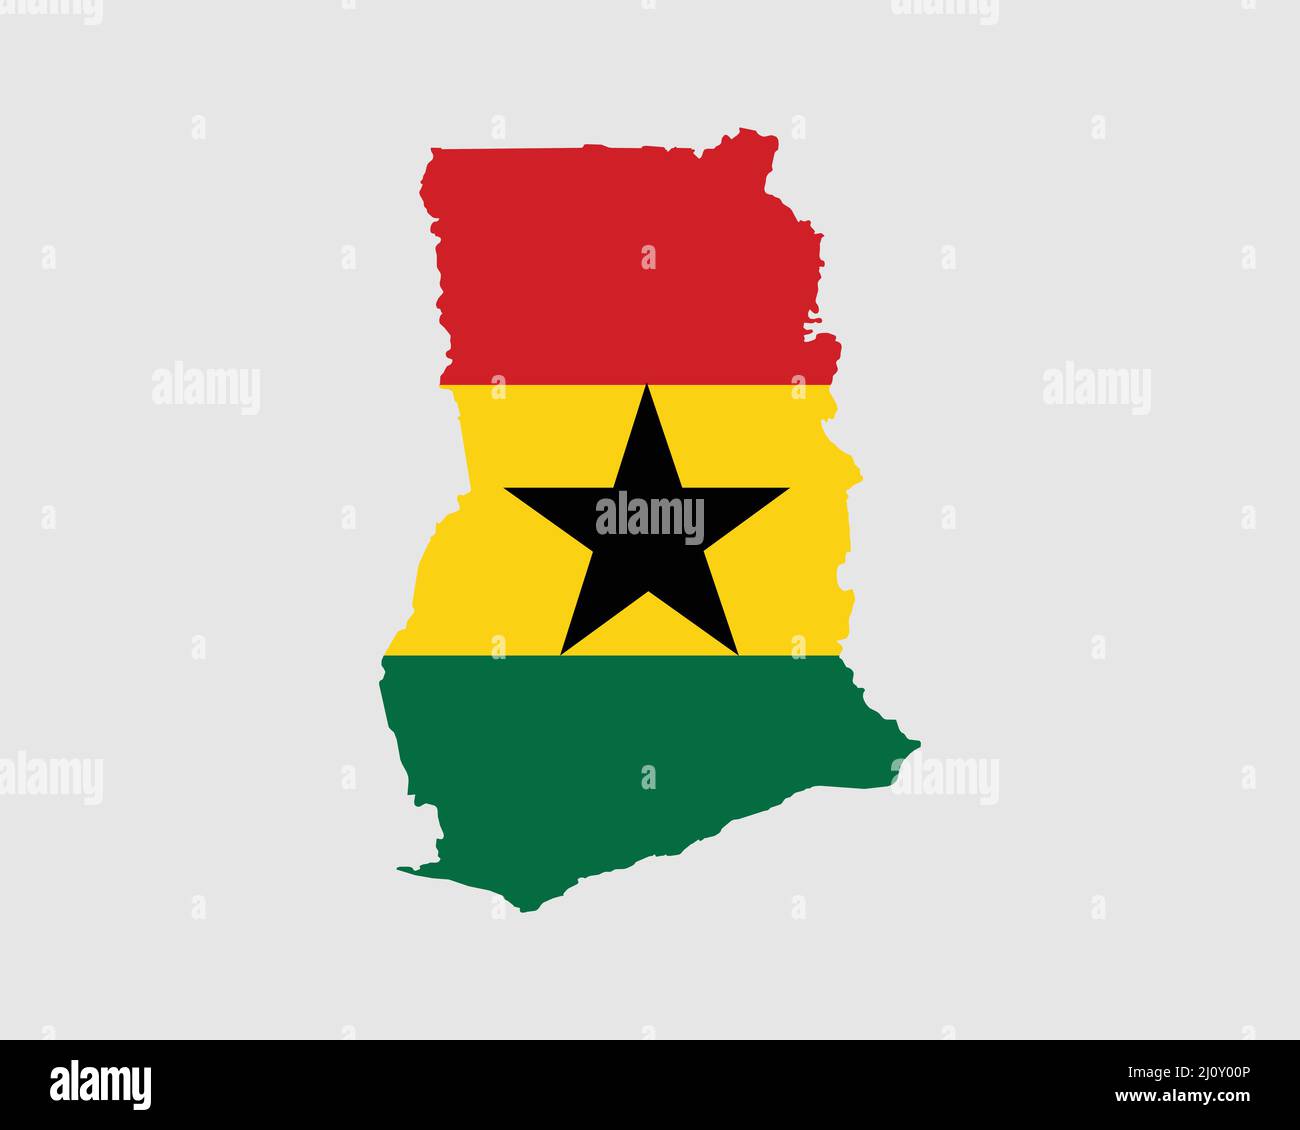 Drapeau de carte du Ghana. Carte de la République du Ghana avec la bannière du pays ghanéen. Illustration vectorielle. Illustration de Vecteur